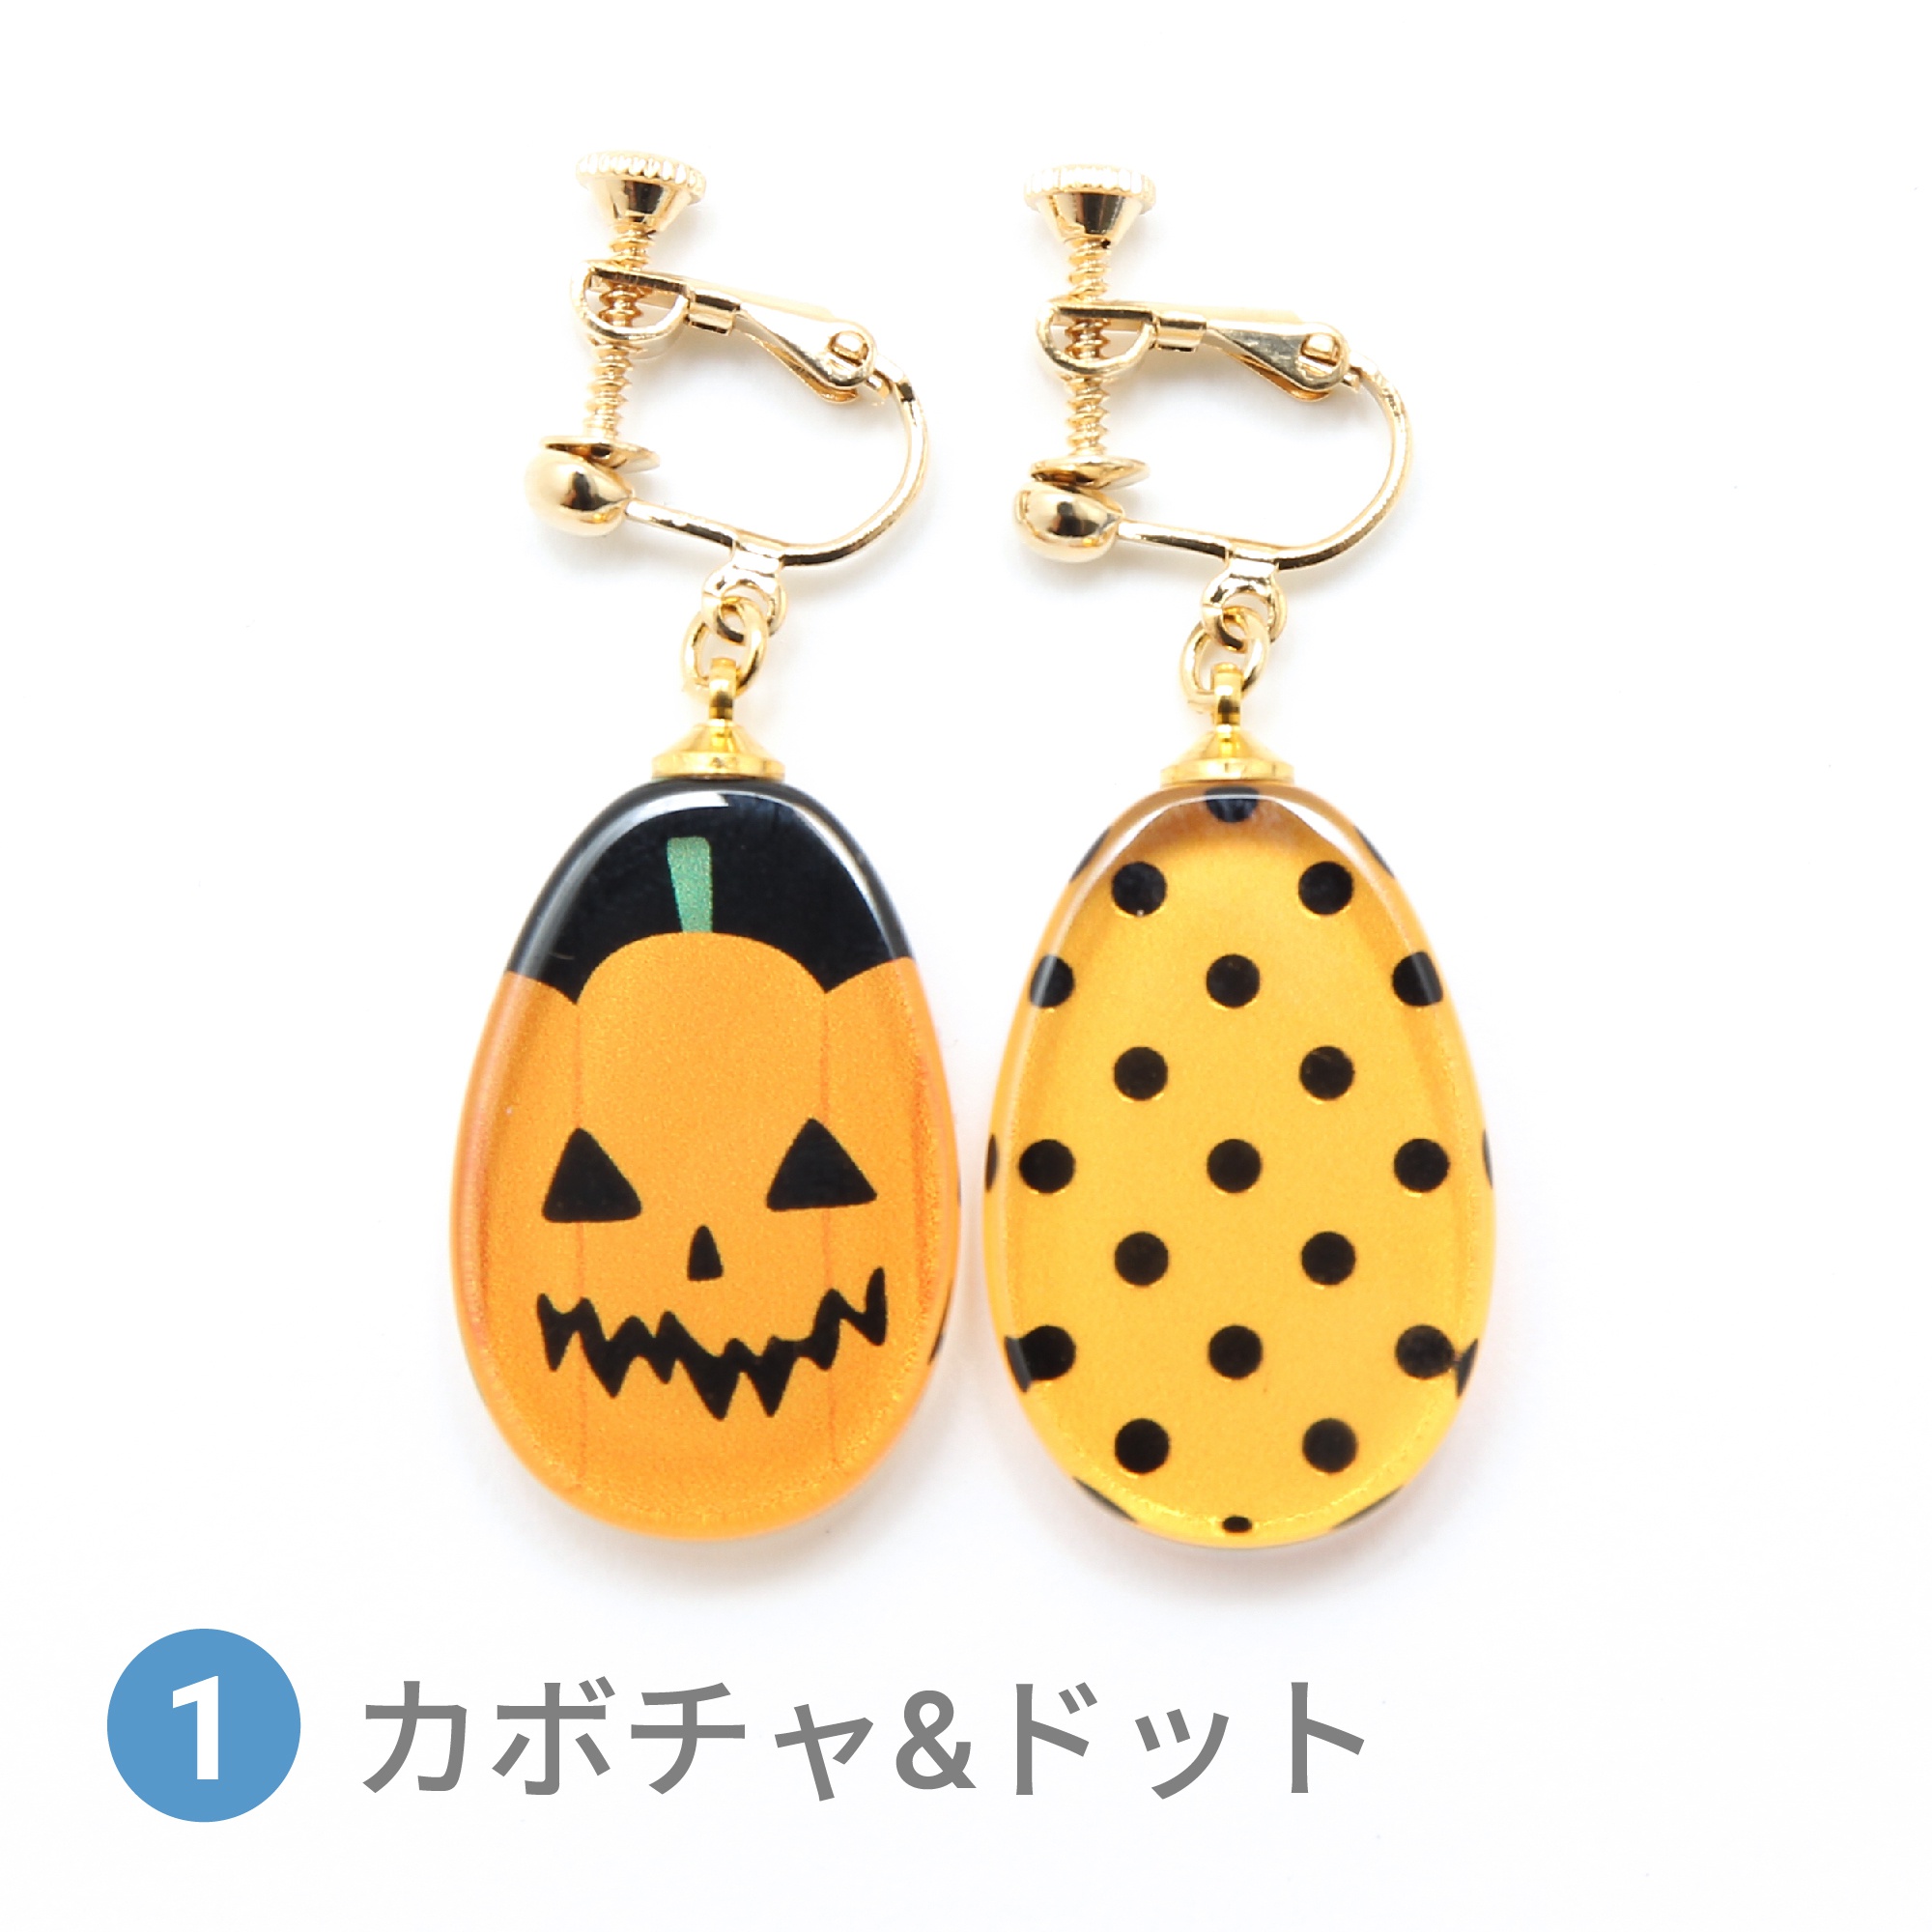 Glass accessories Earring HALLOWEEN MOTIF pumpkin&dot drop shape